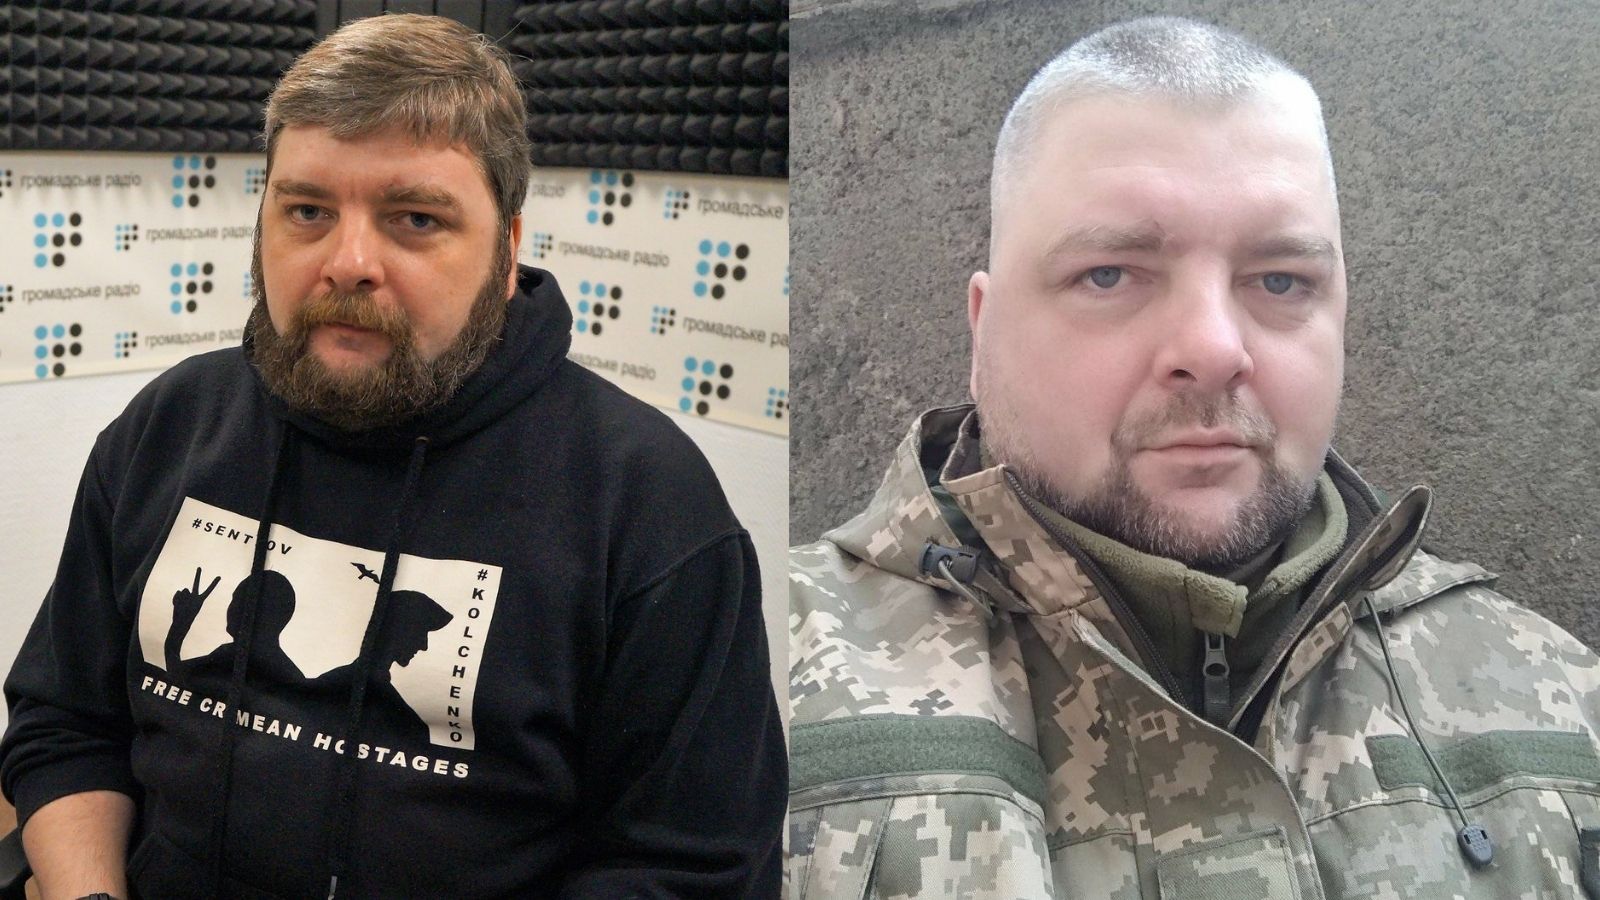 Громадське радио собирает средства на тепловизор для подразделения, в котором служит правозащитник Максим Буткевич